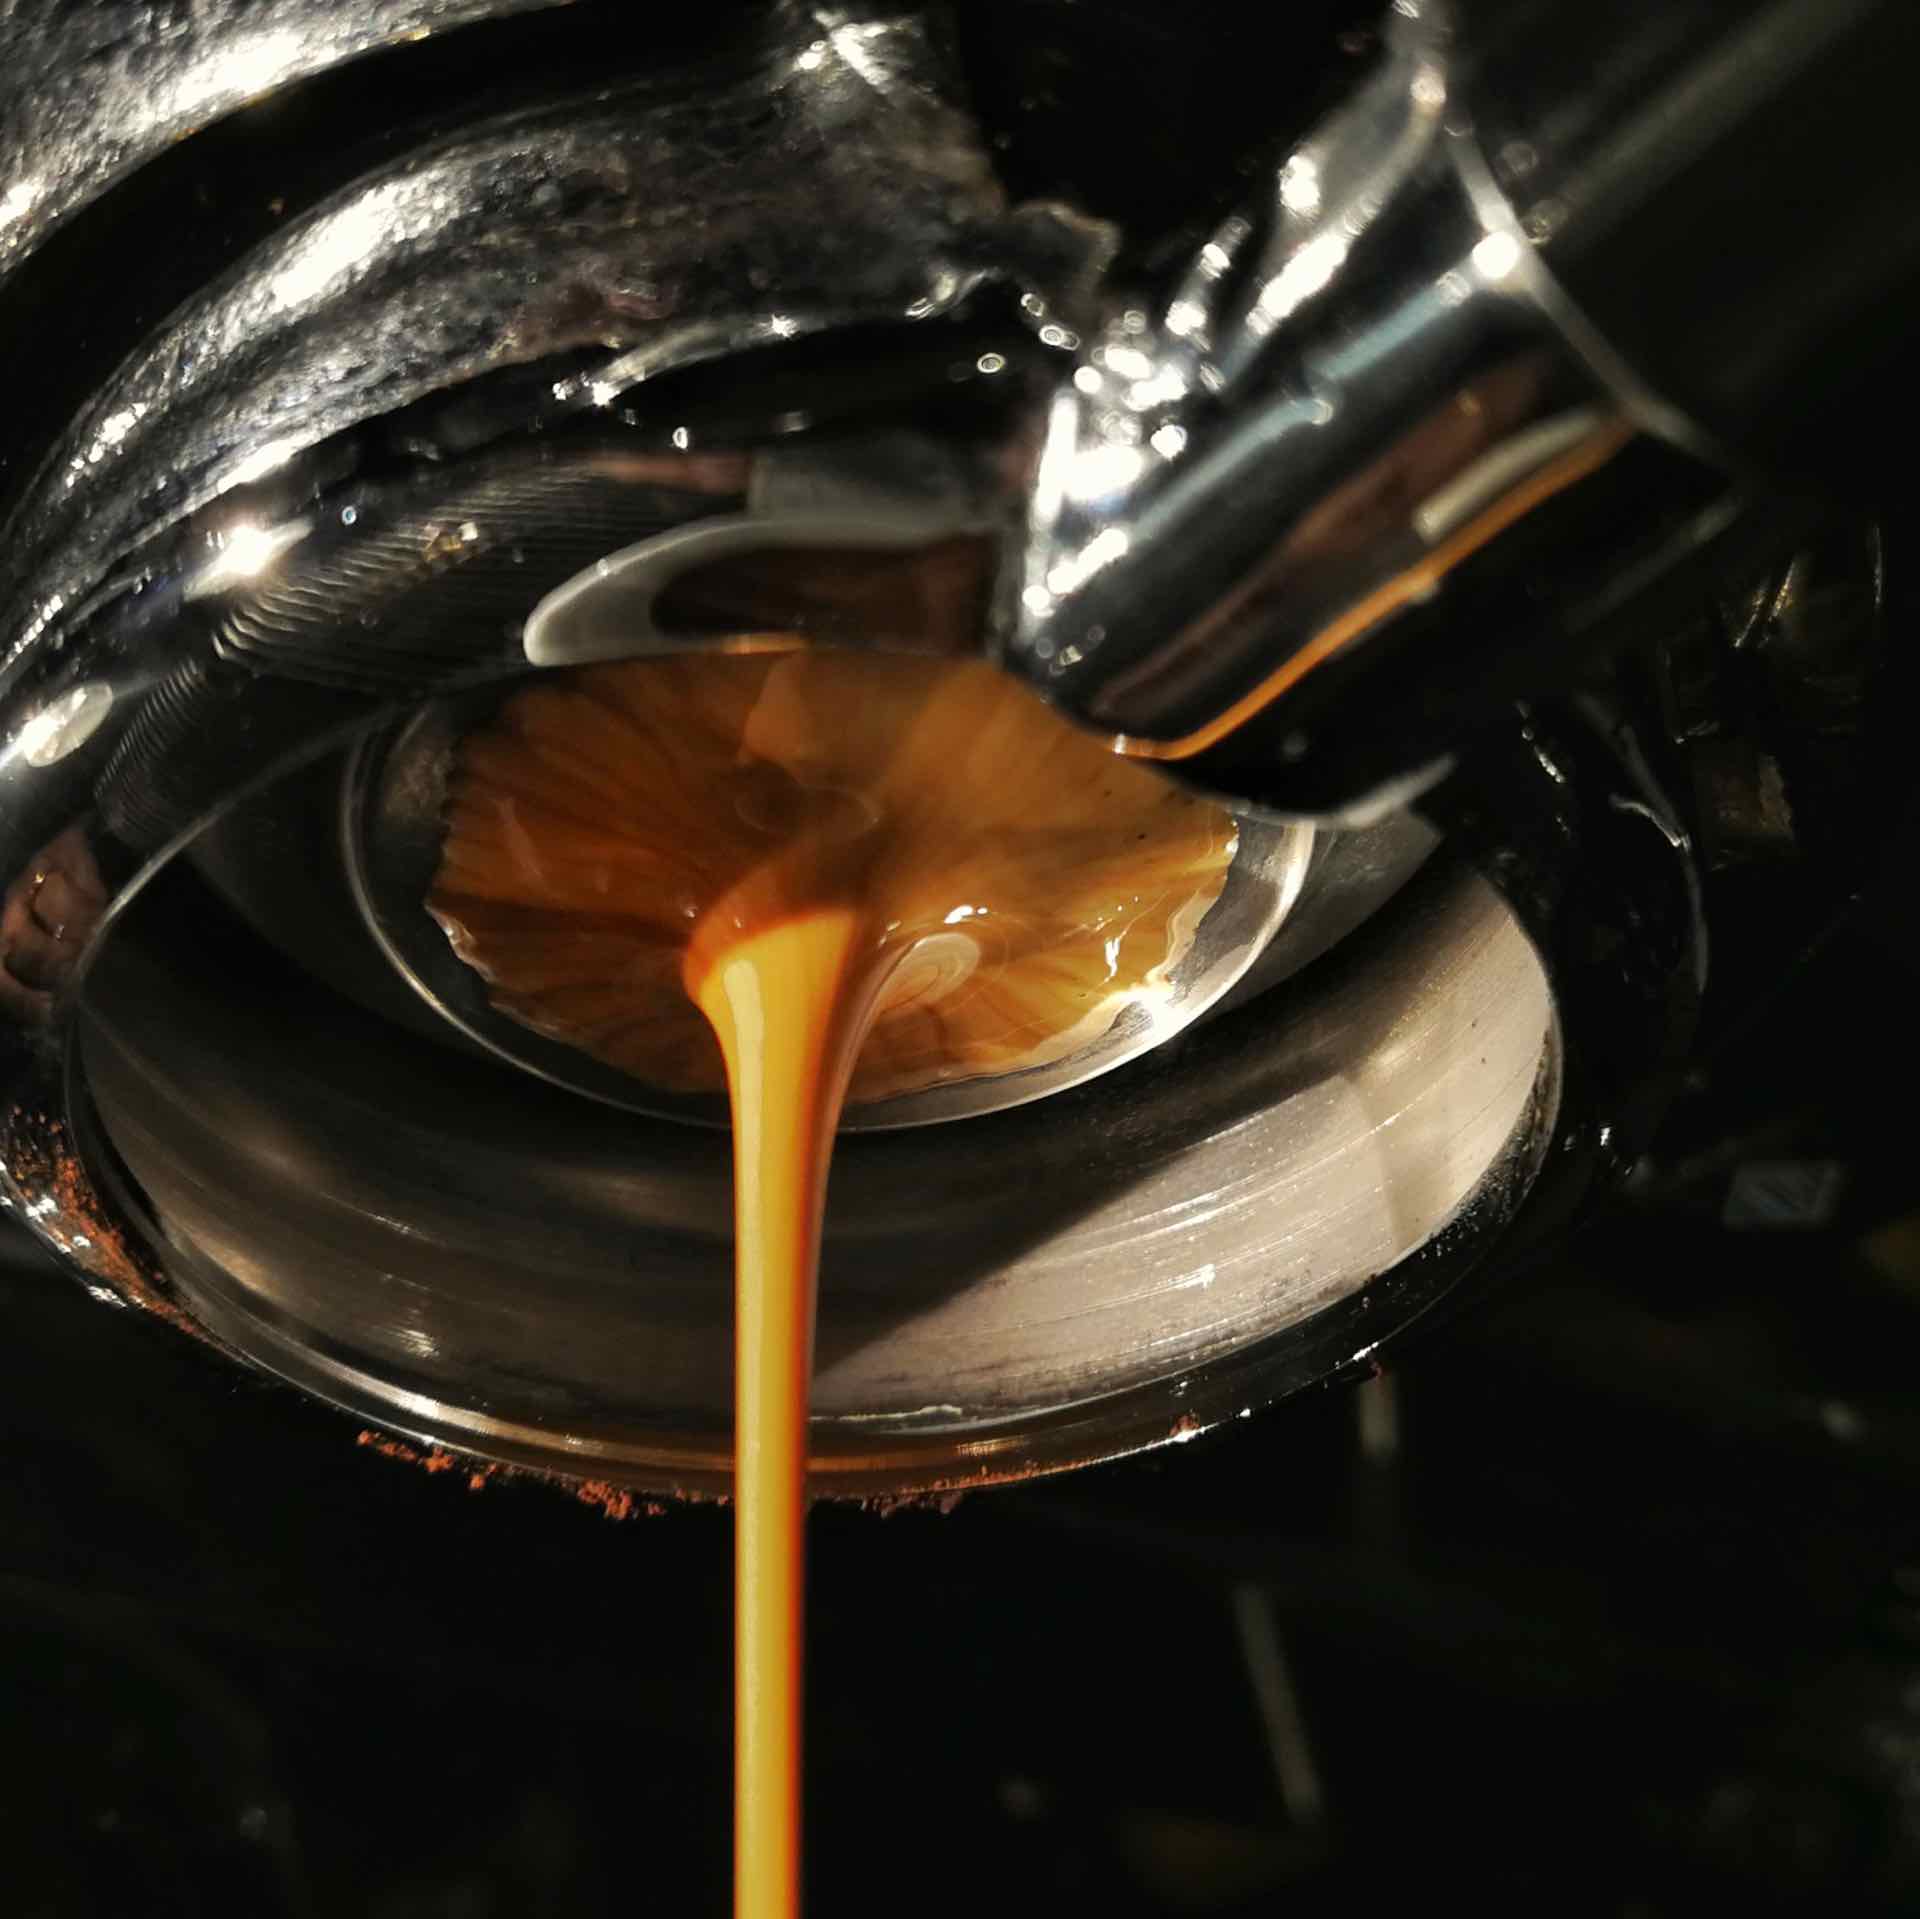 10 Gründe warum ich gerne Kaffee trinke - in the making